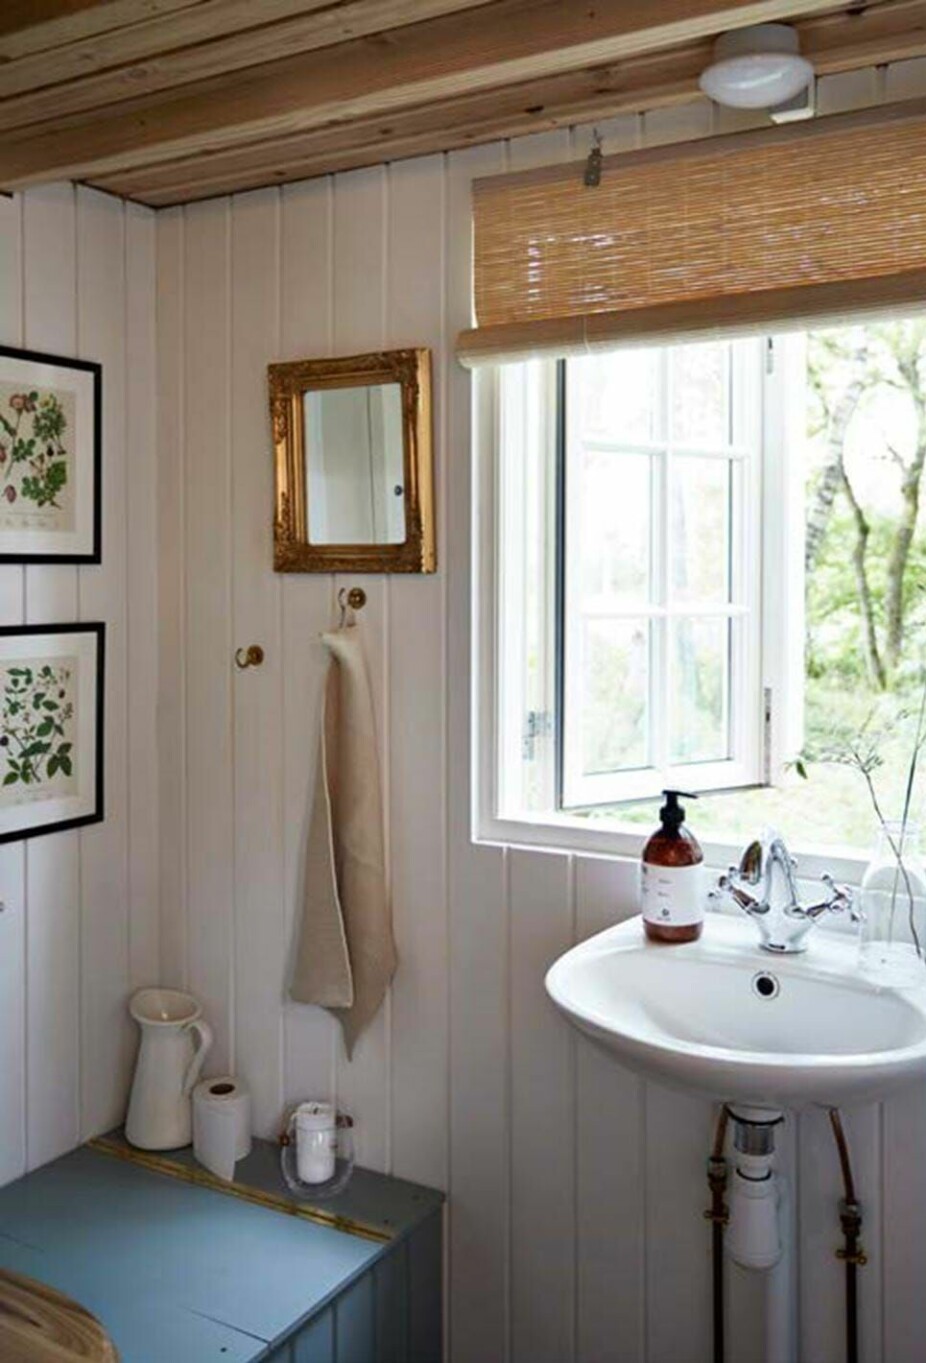 TOALETT MINIHUS: Toalettet fungerer som et skitttoalett med urinavskiller og det er innebygd i en boks som Line har malt vanlig grønt for å understreke den svenske atmosfæren.